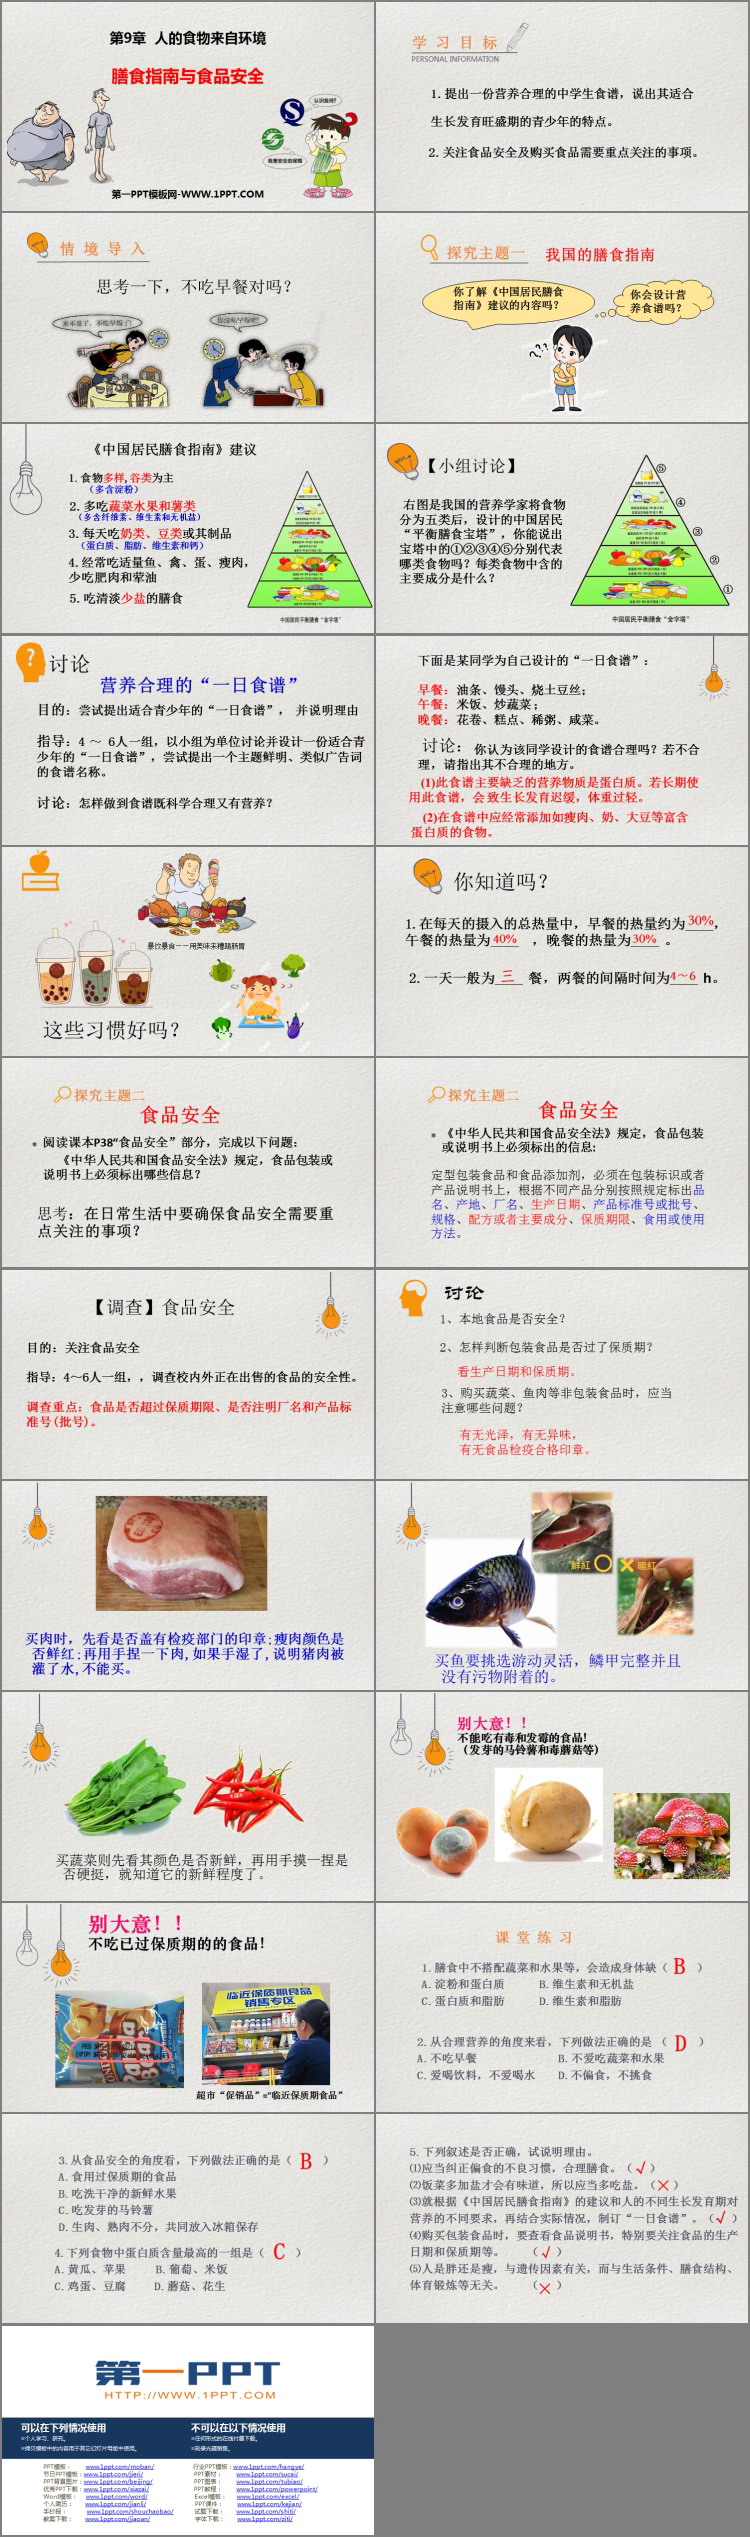 《膳食指南与食品安全》PPT免费课件-预览图02